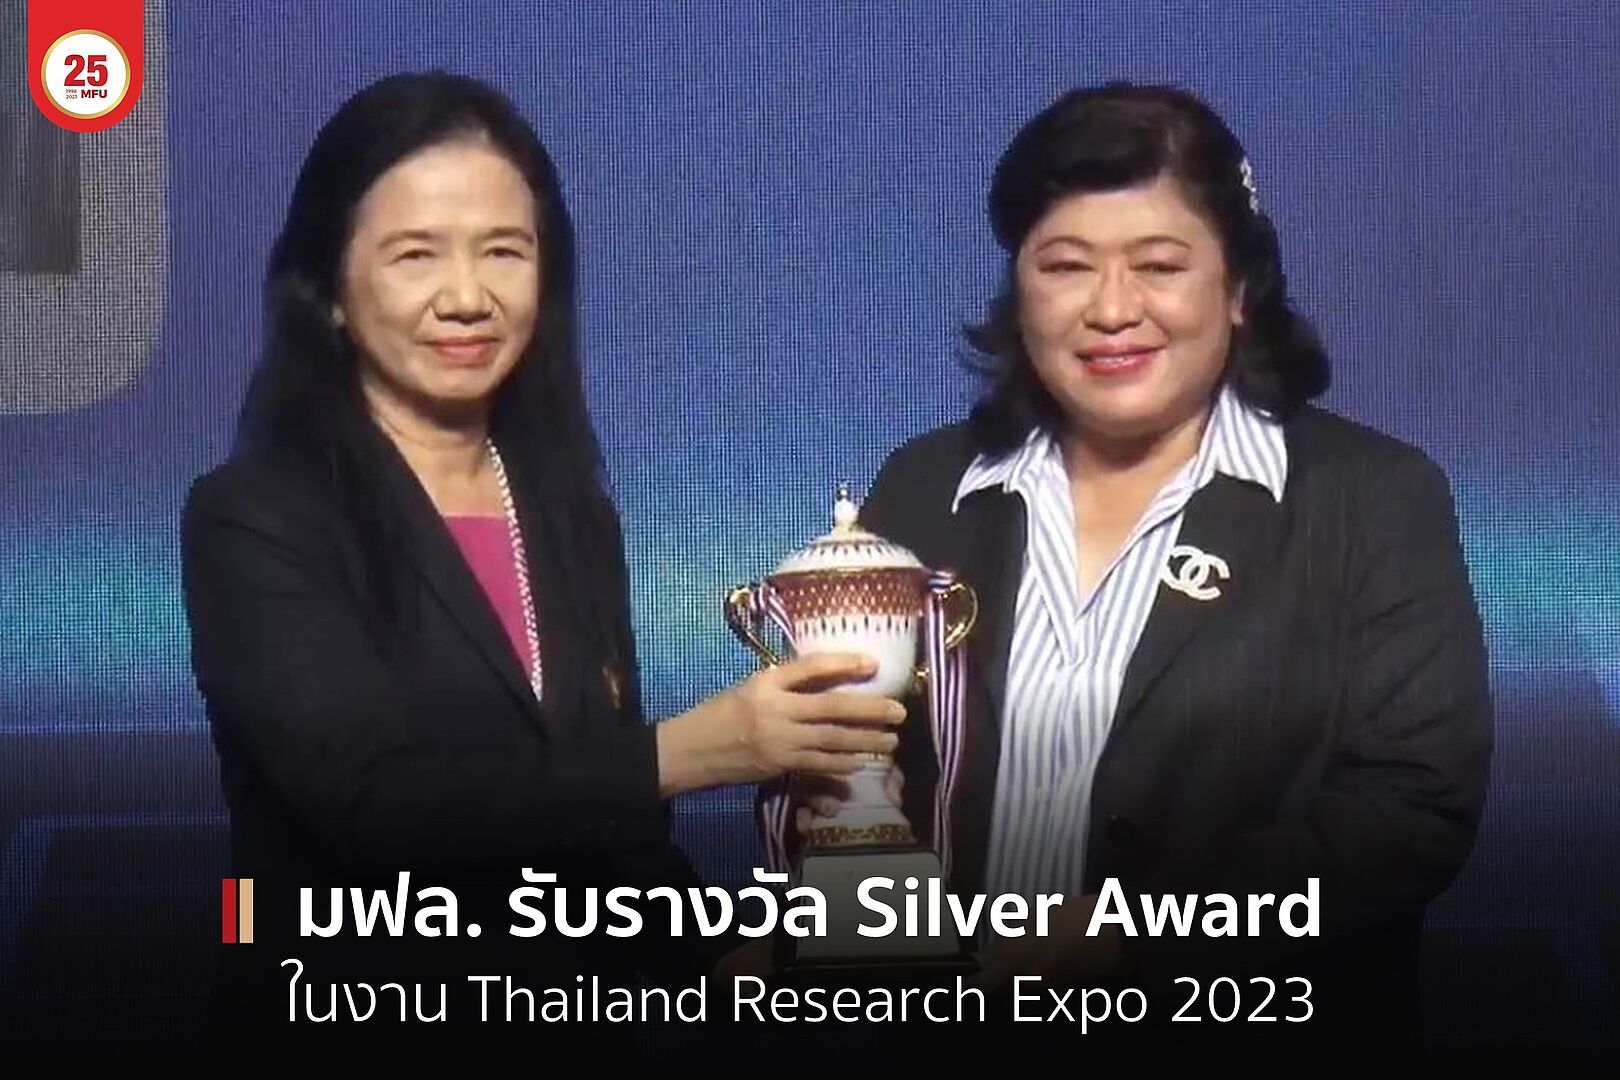 มฟล. คว้ารางวัล Silver Award ในงาน Thailand Research Expo 2023 ปลื้มรับรางวัล 3 ปีซ้อน ตอกย้ำความสำเร็จด้านการวิจัยและนวัตกรรม